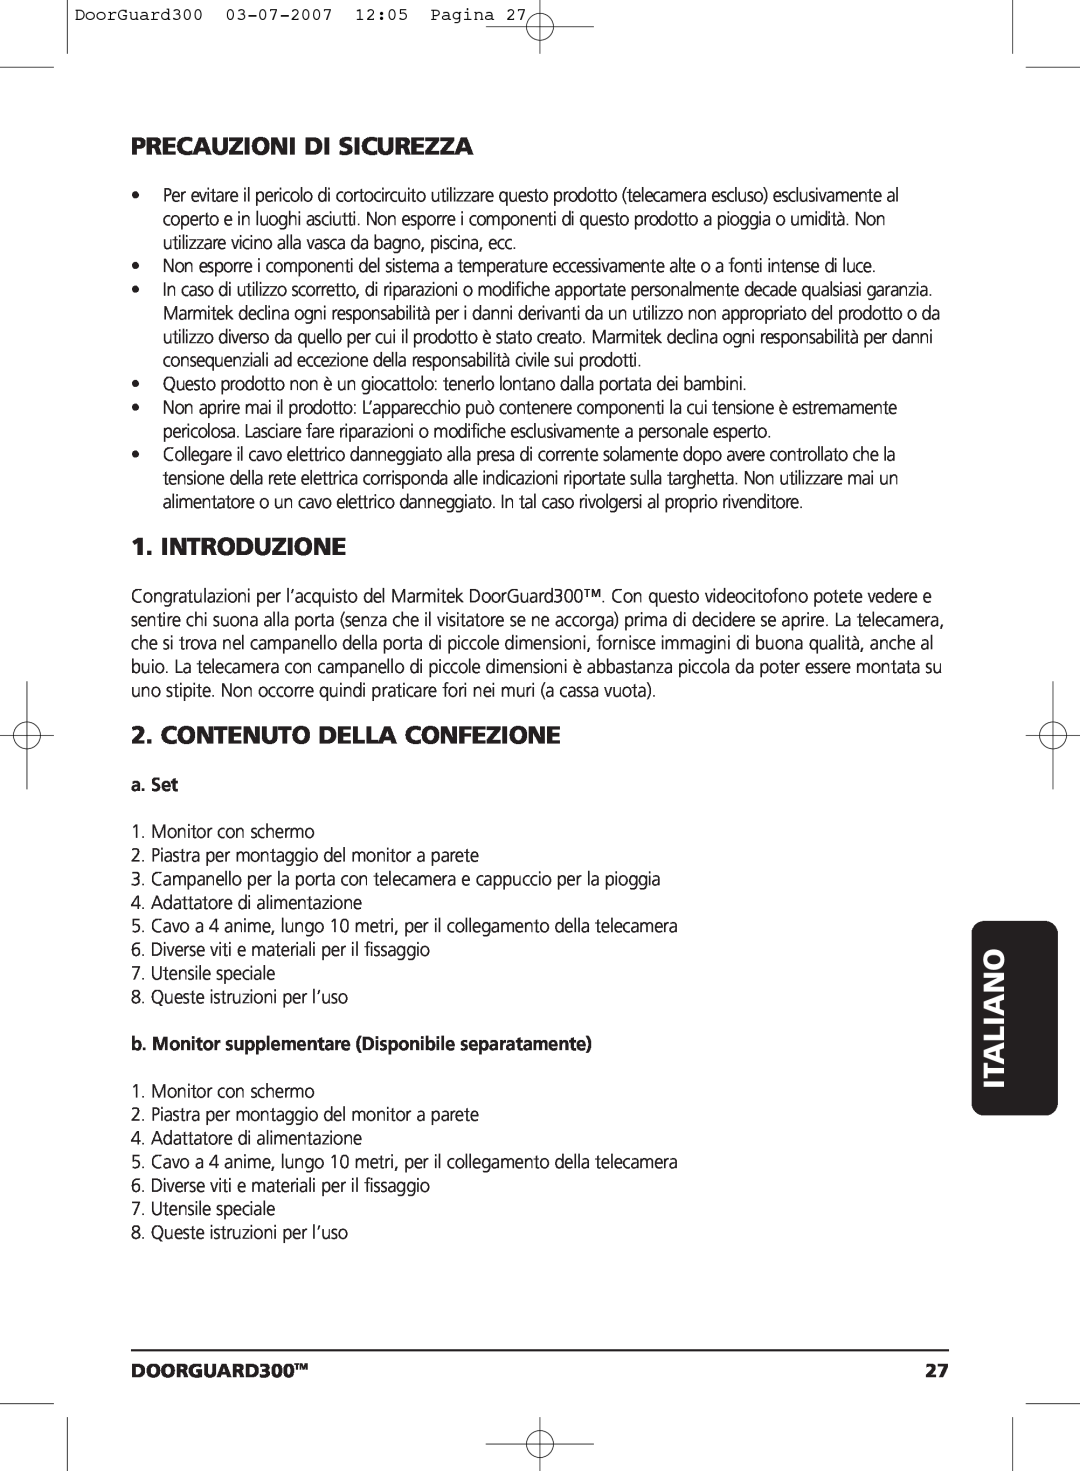 Marmitek DOORGUARD300TM user manual Italiano, Precauzioni Di Sicurezza, Introduzione, Contenuto Della Confezione, a. Set 